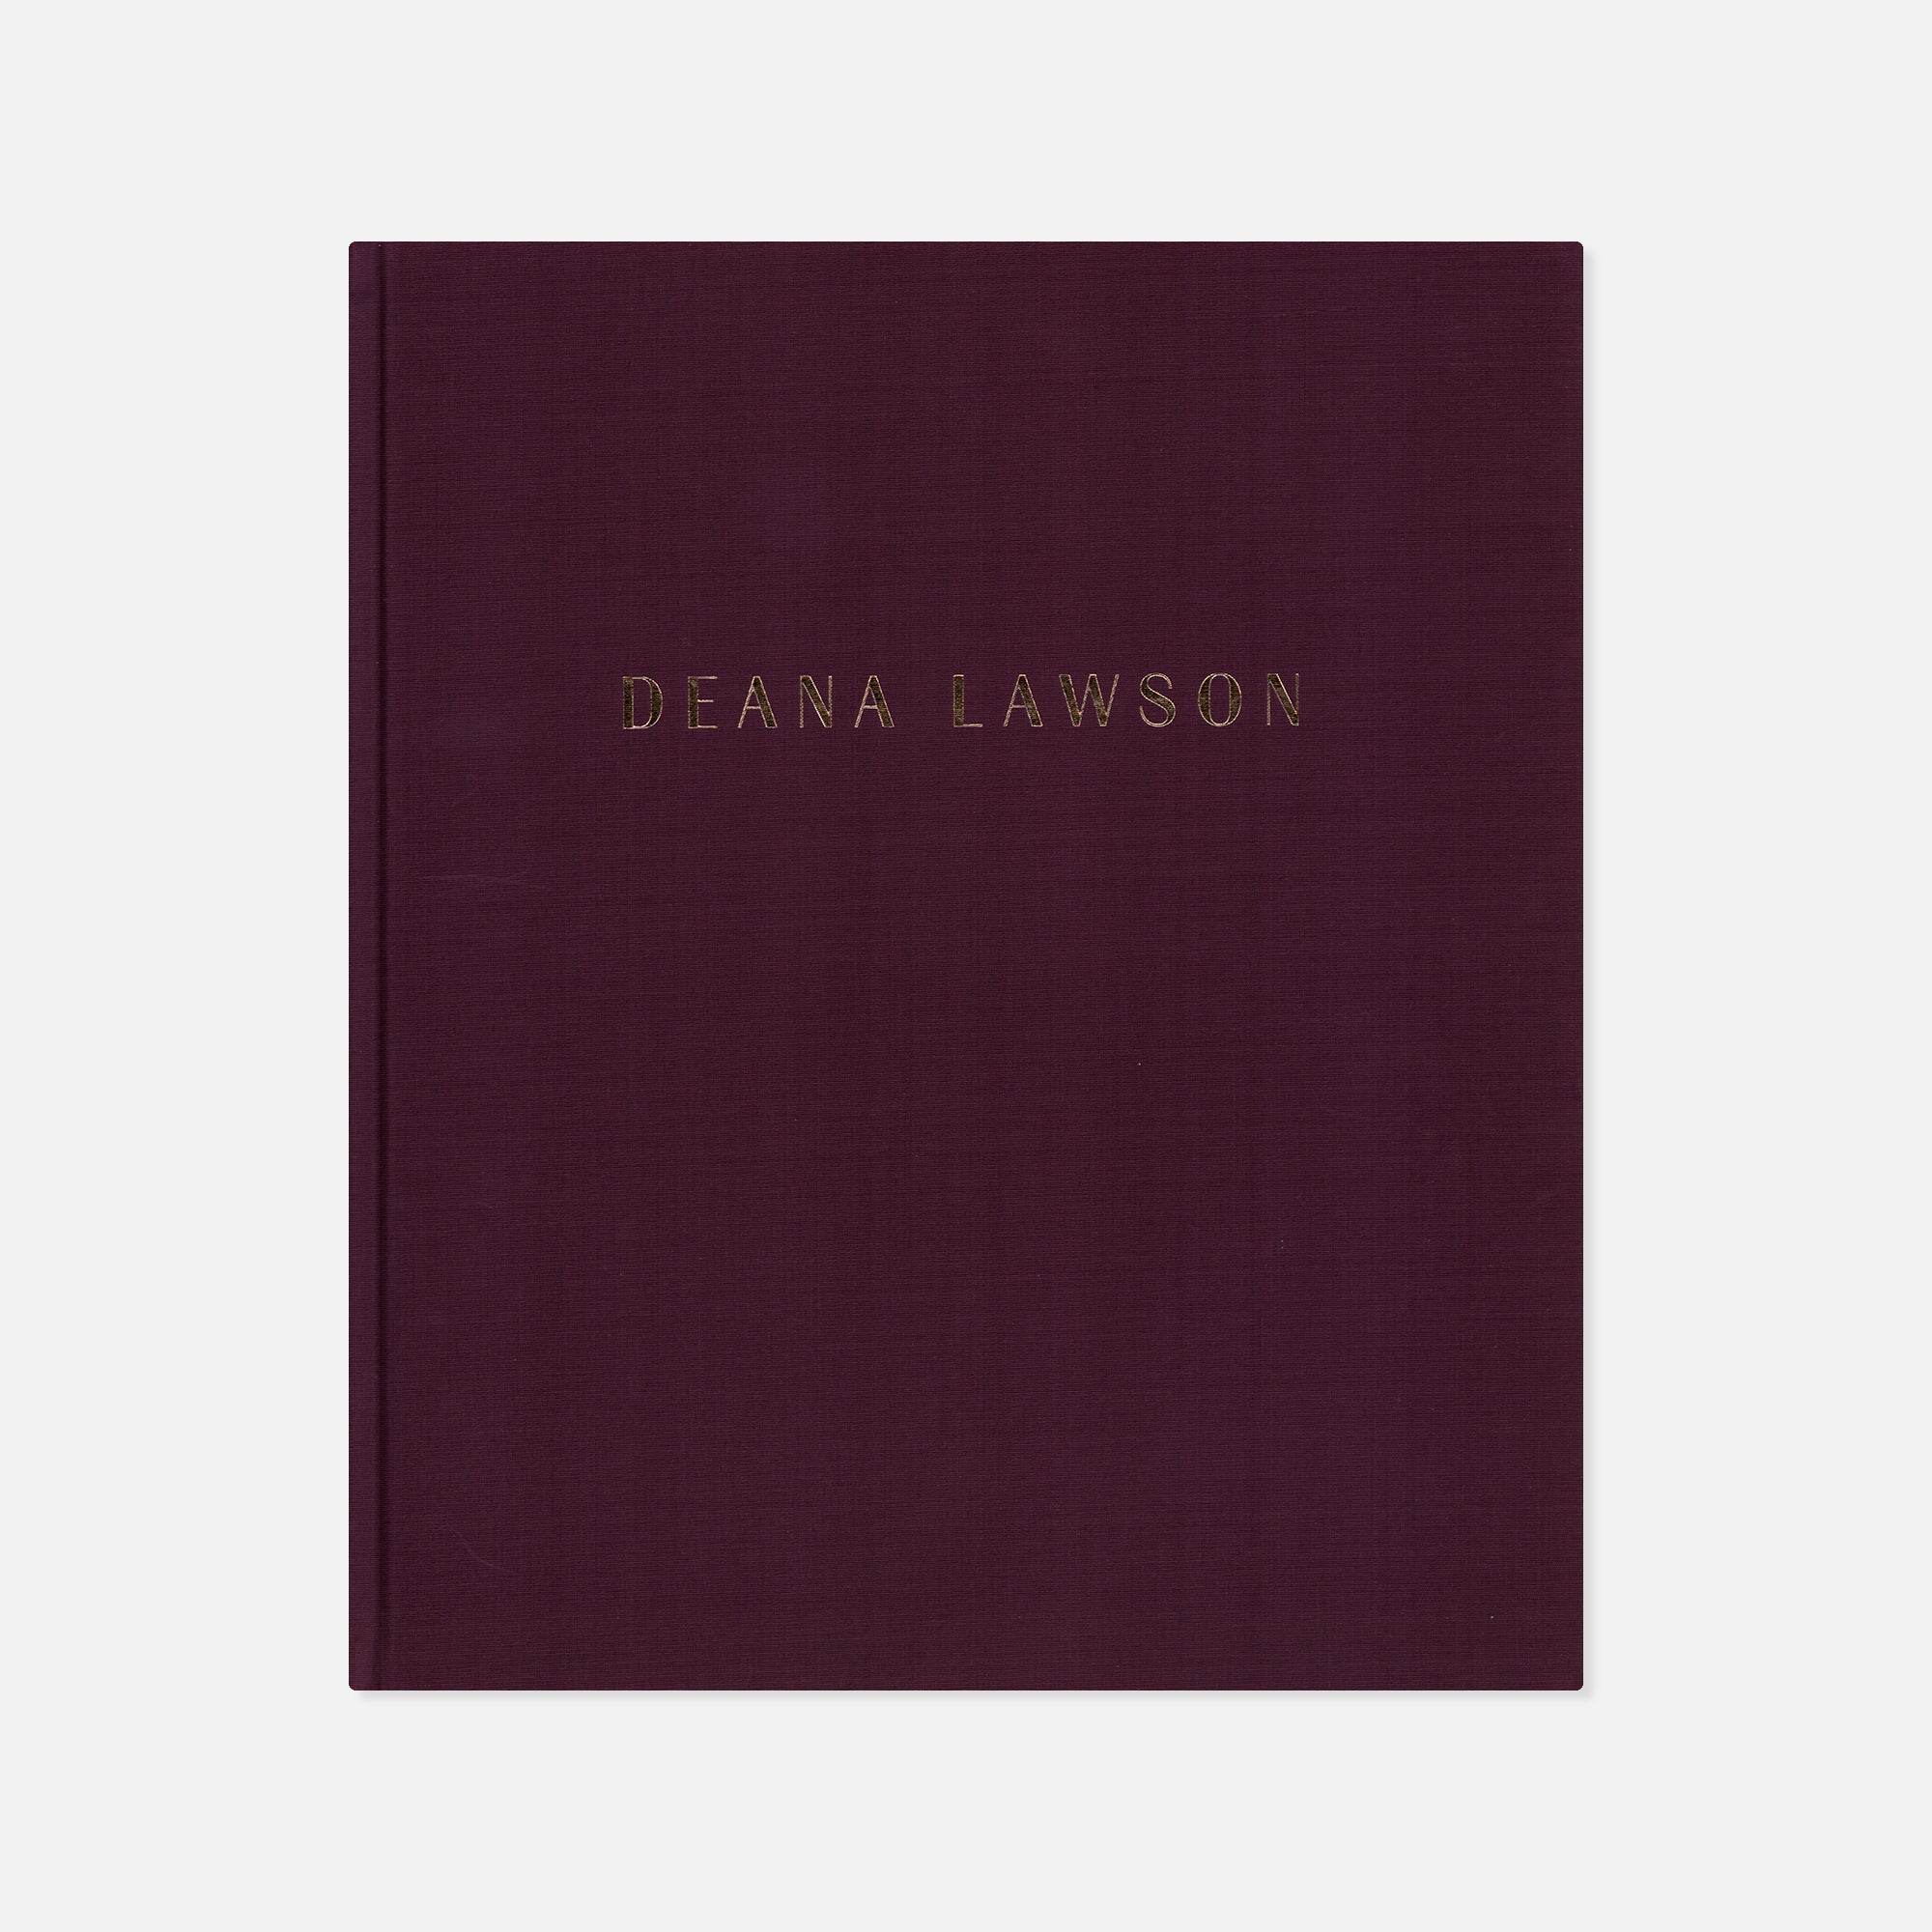 Deana Lawson — An Aperture Monograph